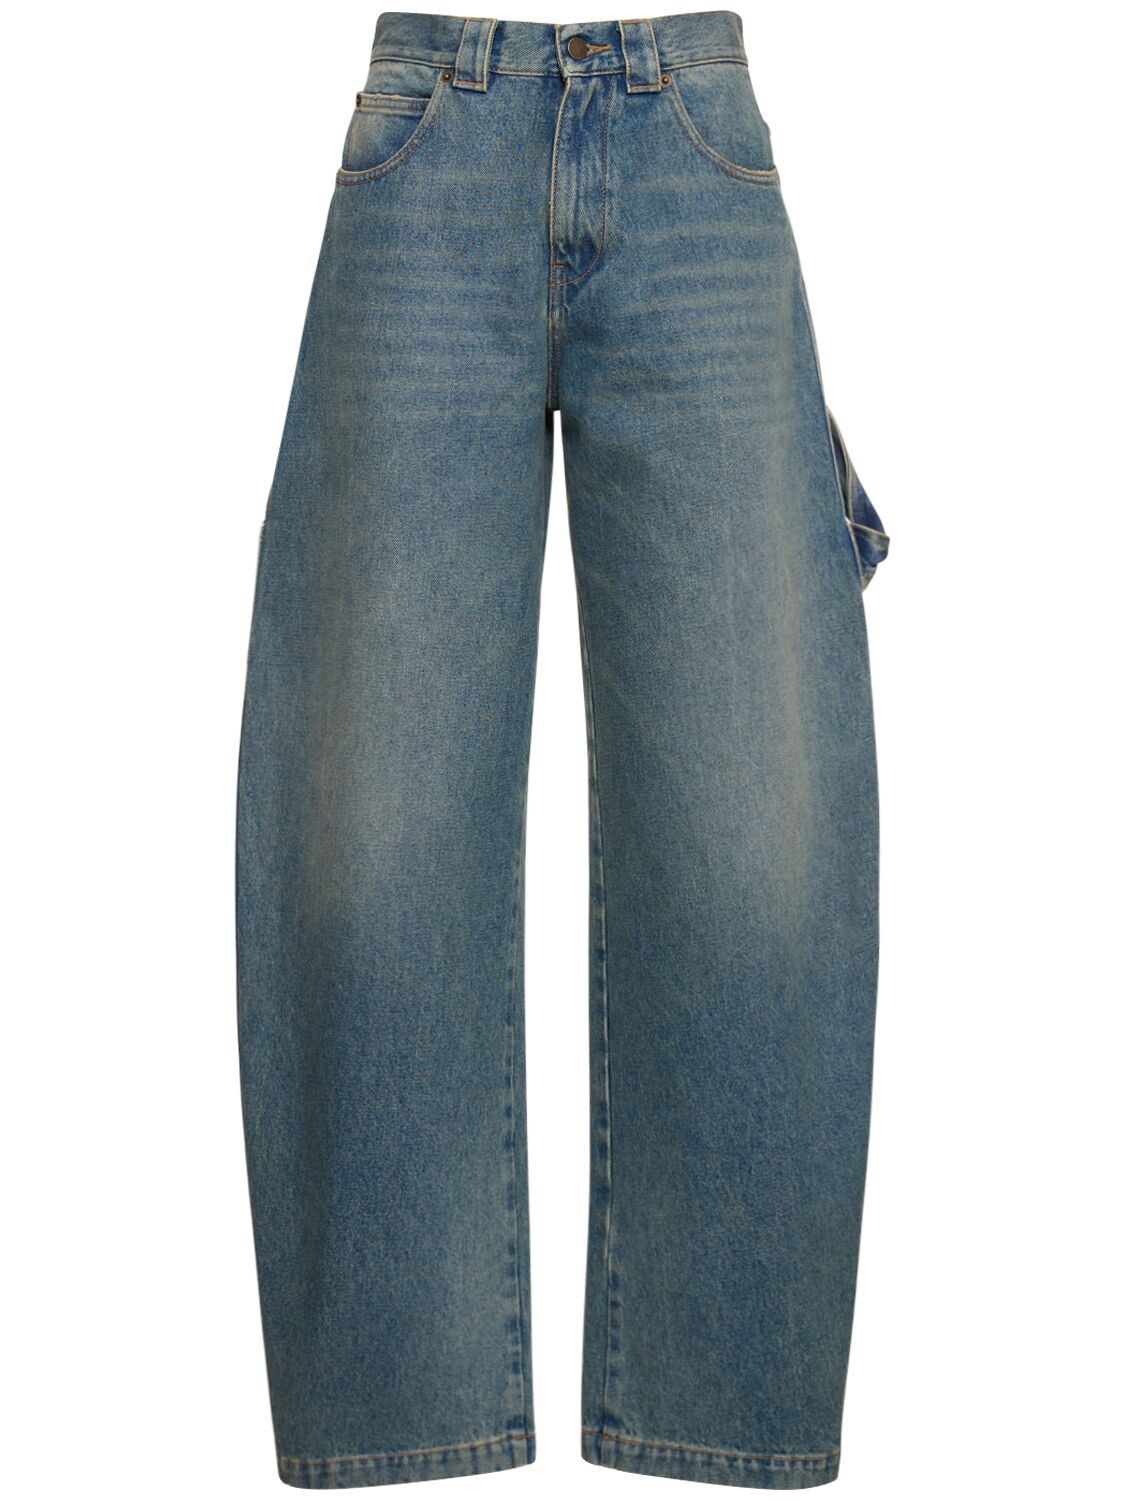 Mujer Jeans Rectos De Denim De Algodón 24 - DARKPARK - Modalova